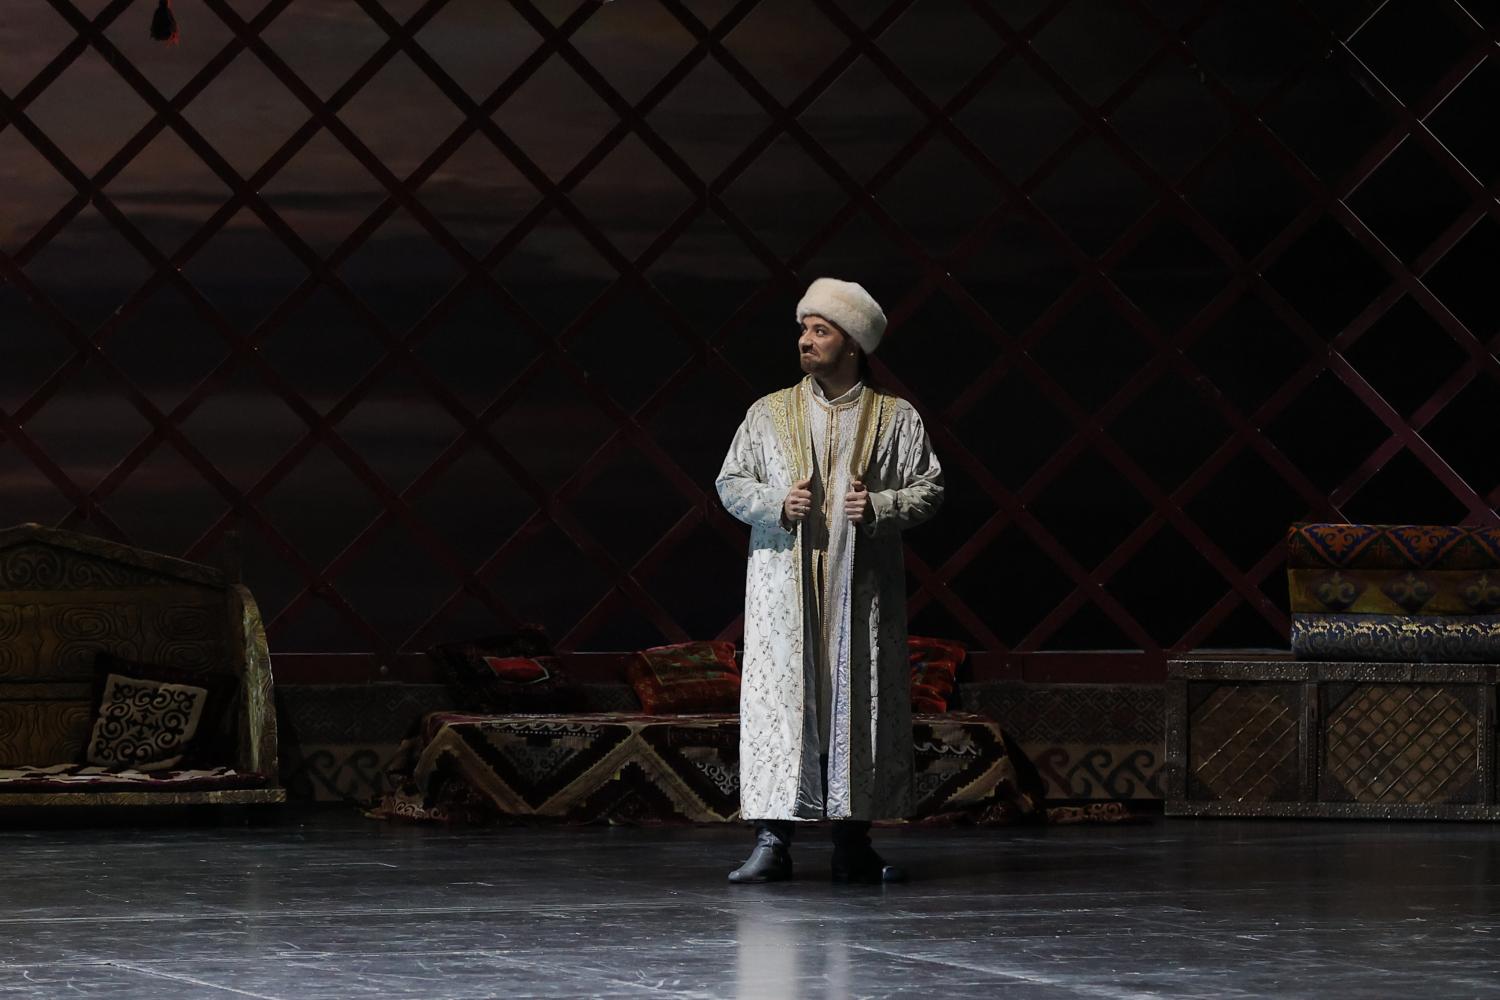 «Астана Опера» отпразднует День единства народа Казахстана